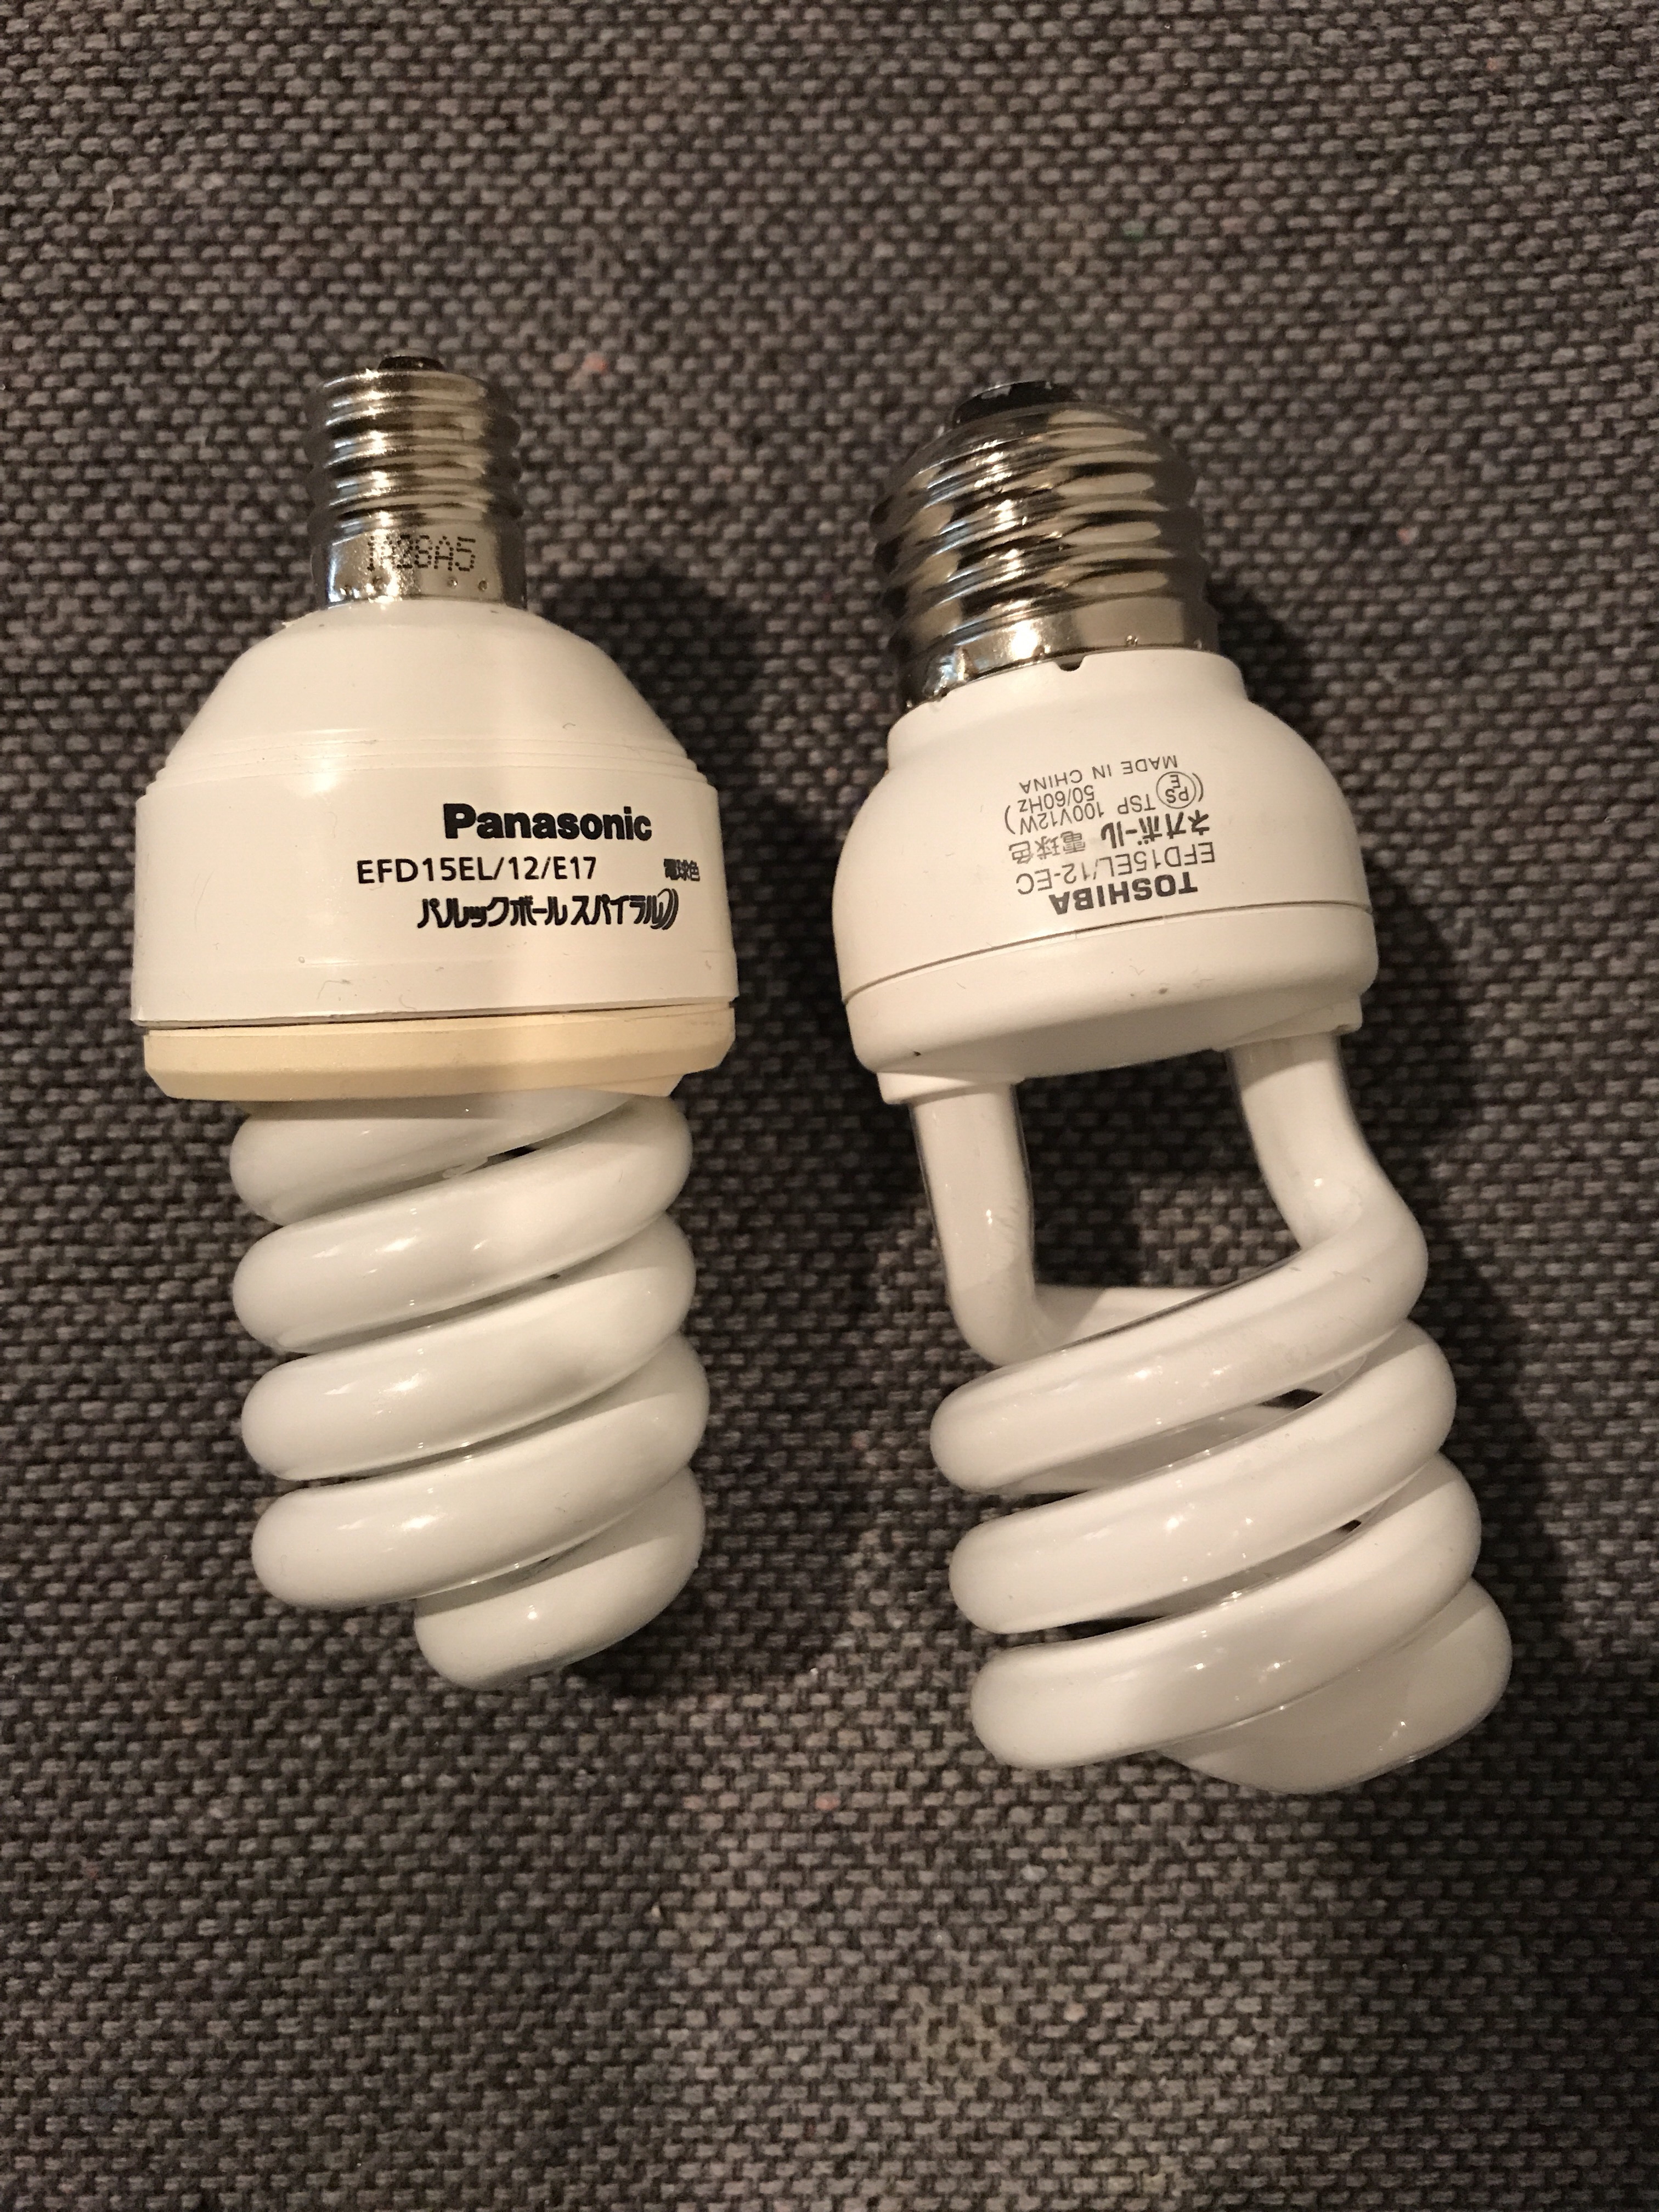 左側が元々ついていた電球、右側が購入したもの。銀色の口金の部分の太さが全然違いますね…という写真